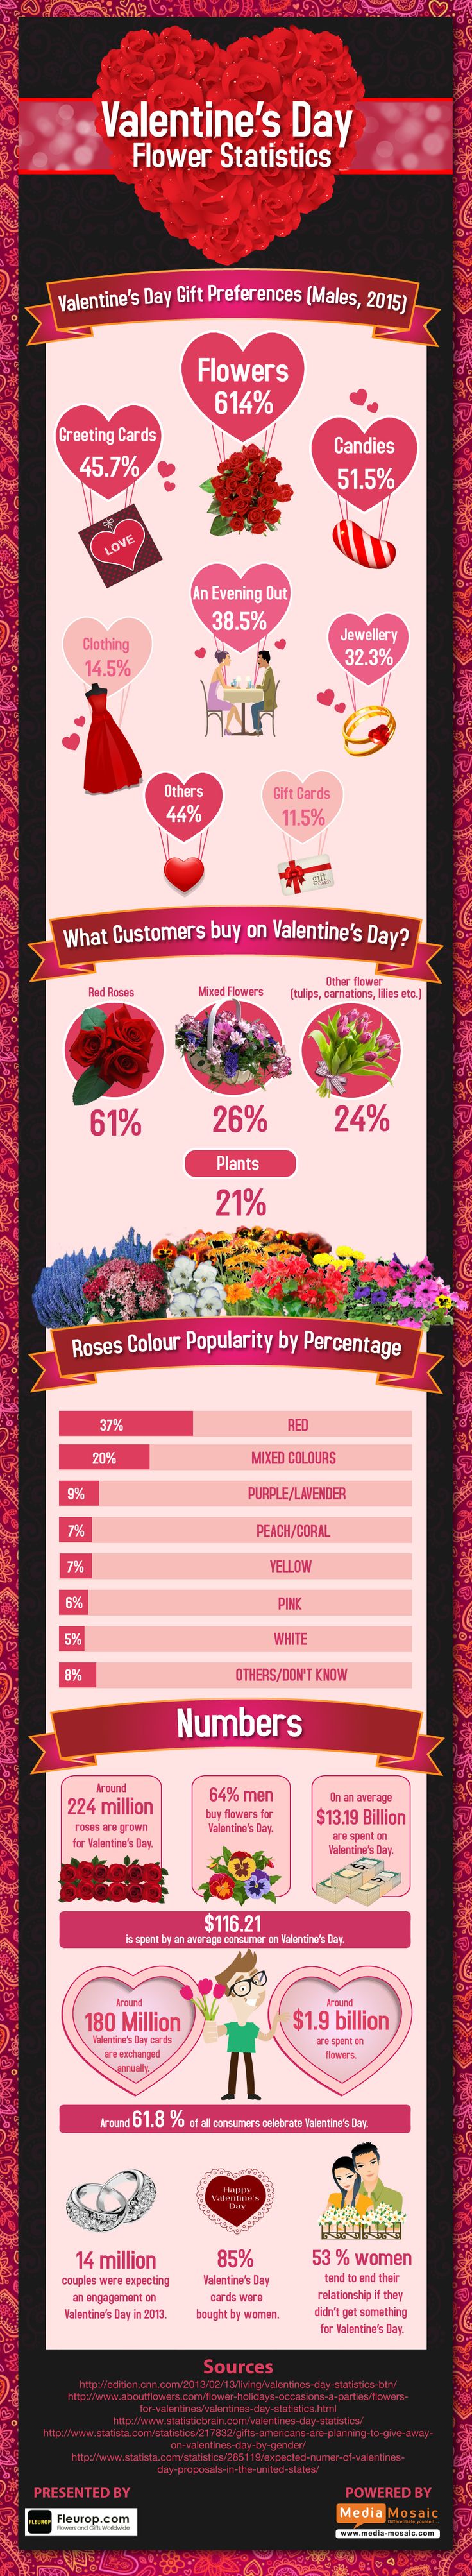 Valentine’s Day Flower Statistics